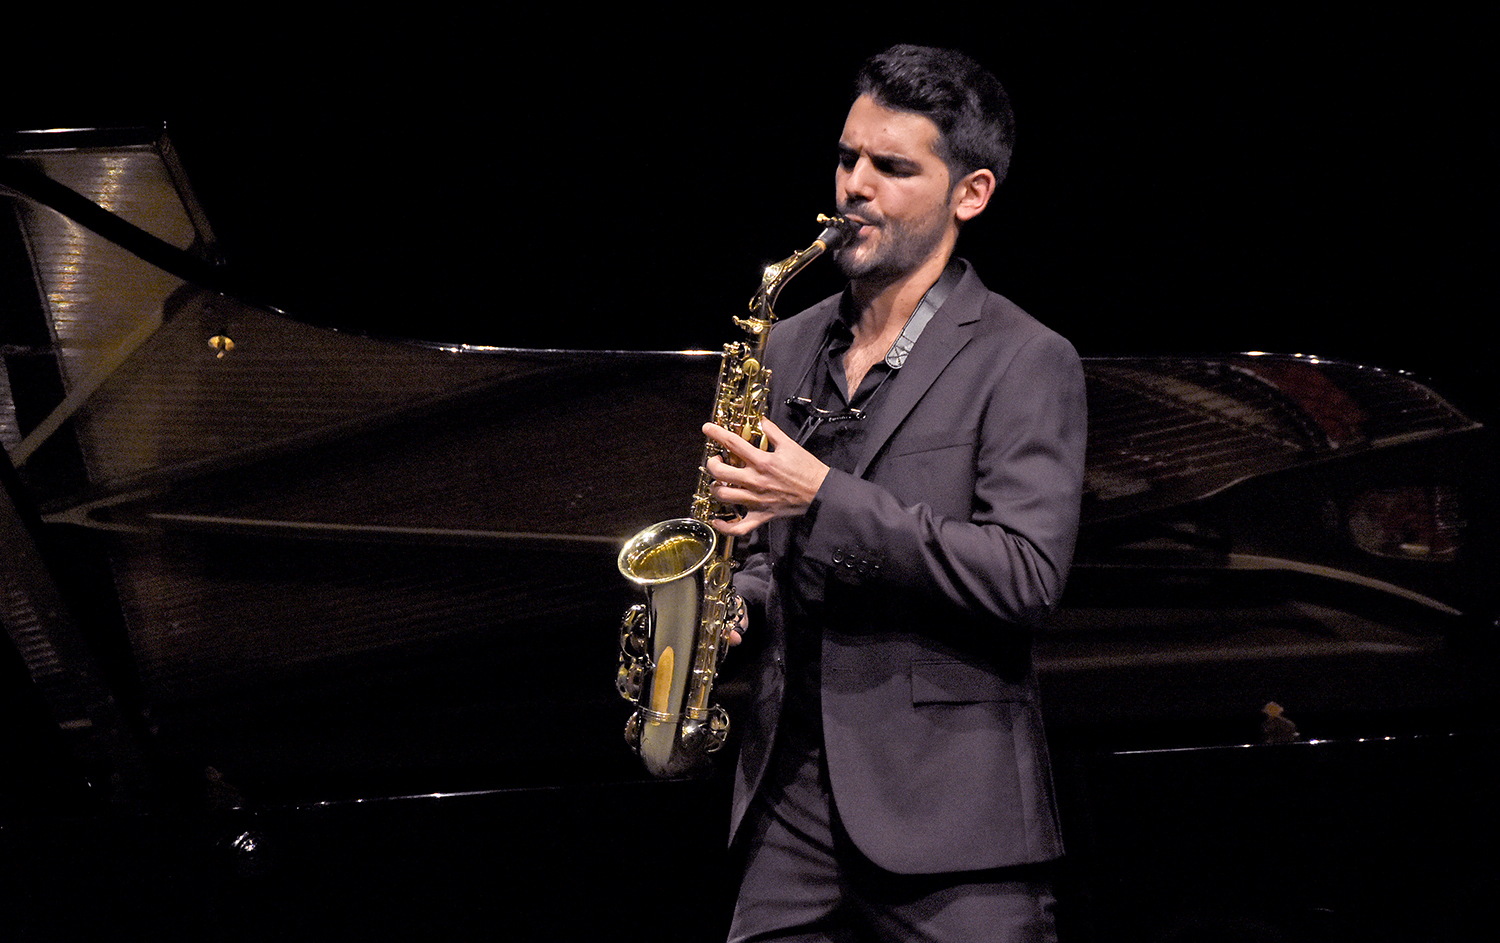 El saxofonista utrerano Manu Brazo debuta este viernes en el prestigioso ‘Wigmore Hall’ de Londres